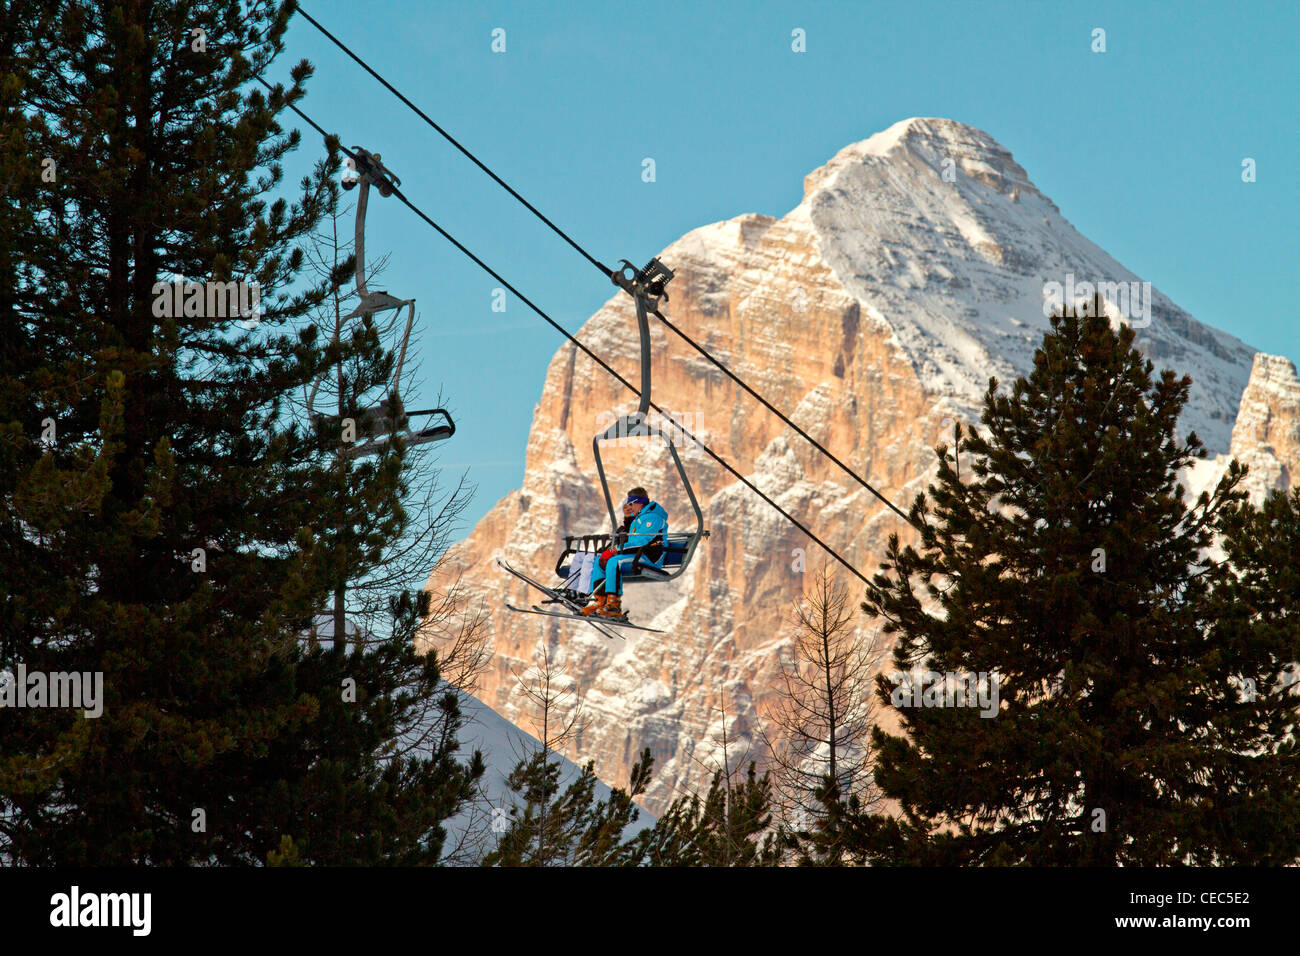 Gli sciatori su un impianto di risalita con la Tofana di Rozes in background, Faloria ski lift, Dolomiti, Cortina d;ampezzo, Italia Foto Stock